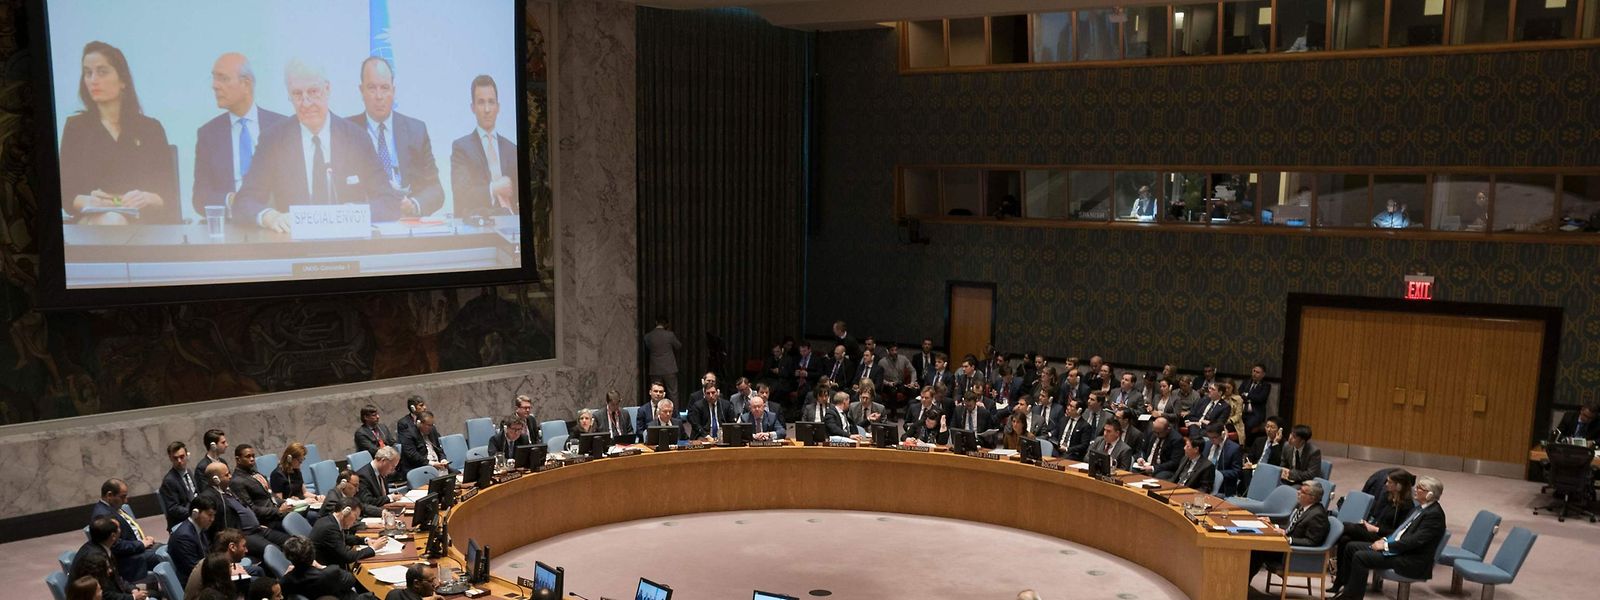 Der UN-Sicherheitsrat beschäftigte sich mit zwei konkurrierenden Entwürfen Russlands und der USA zur Frage, wie genau der Einsatz von Chemiewaffen in Syrien untersucht werden soll.